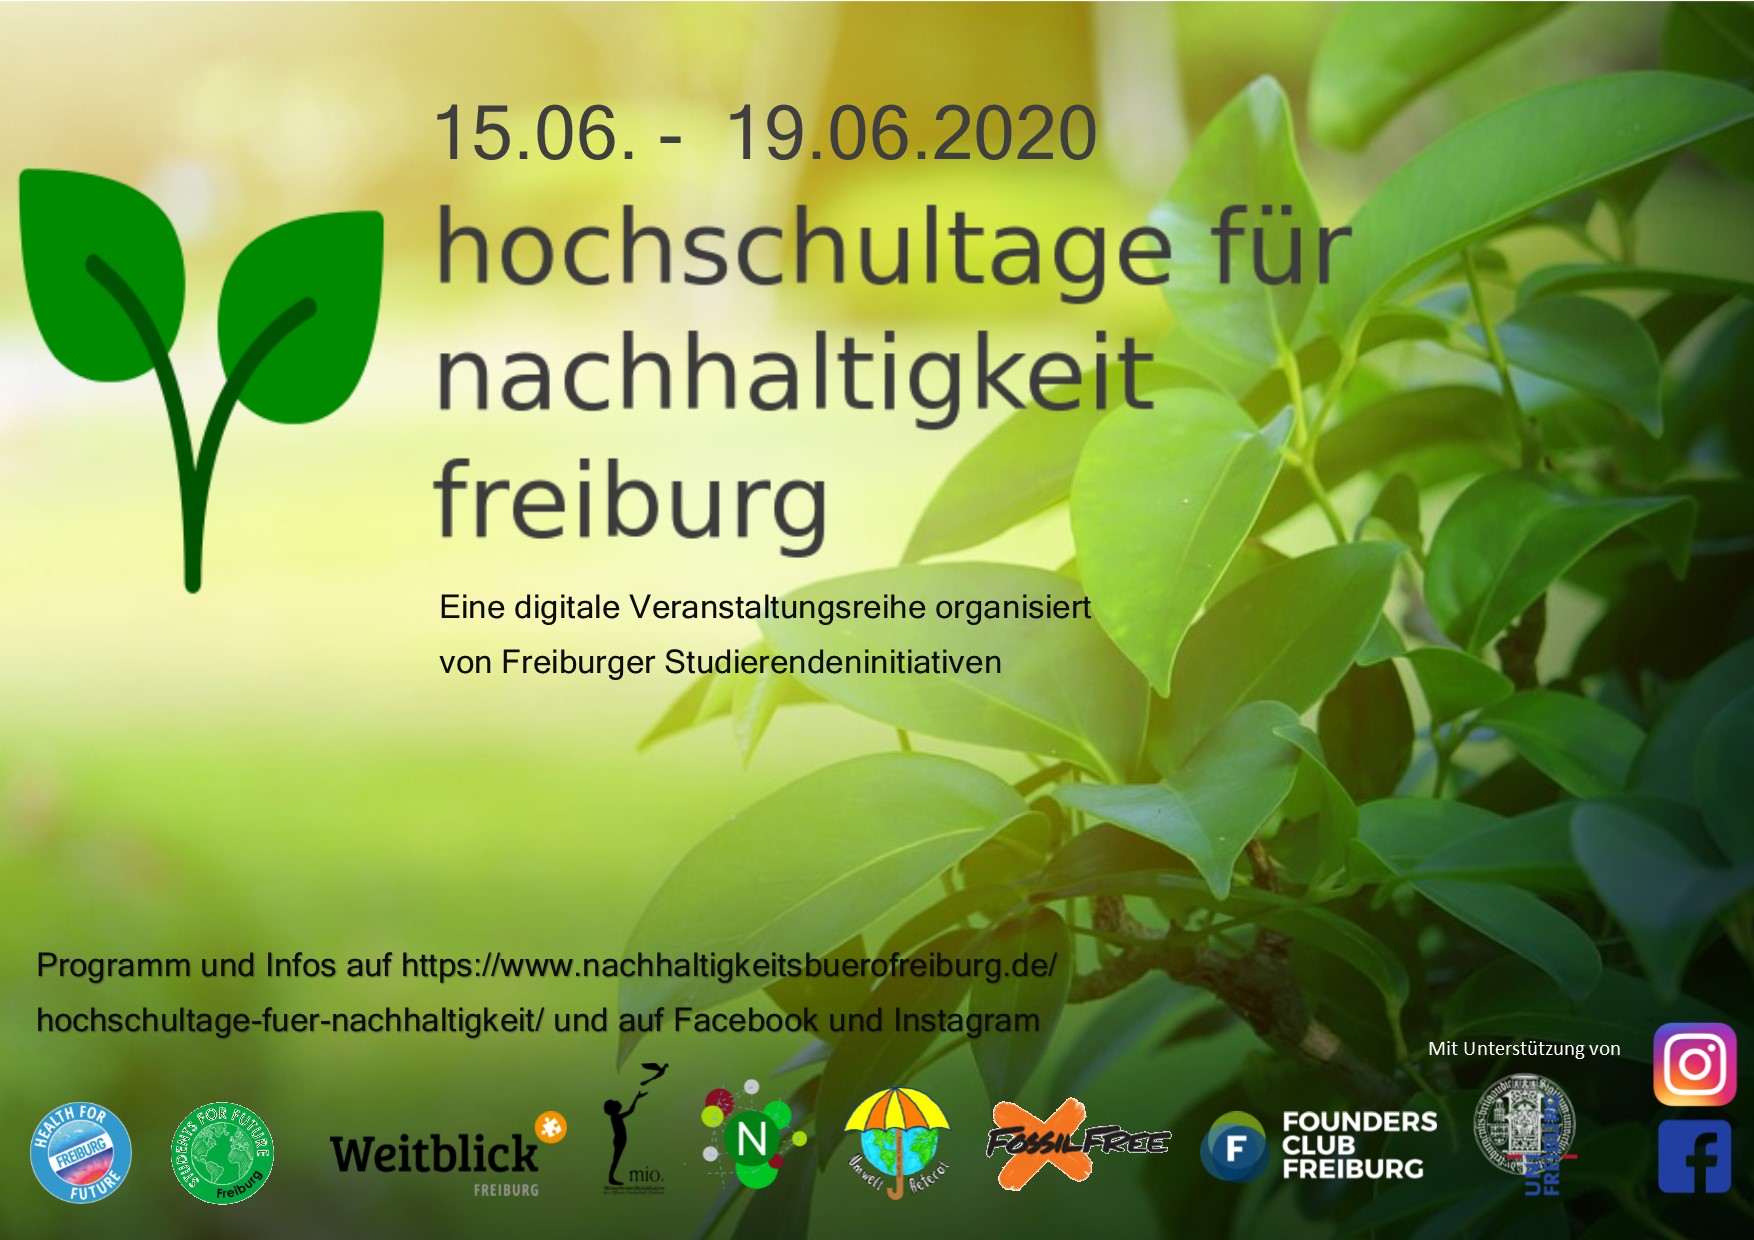 hochschultage-fuer-nachhaltigkeit-flyer1.jpg